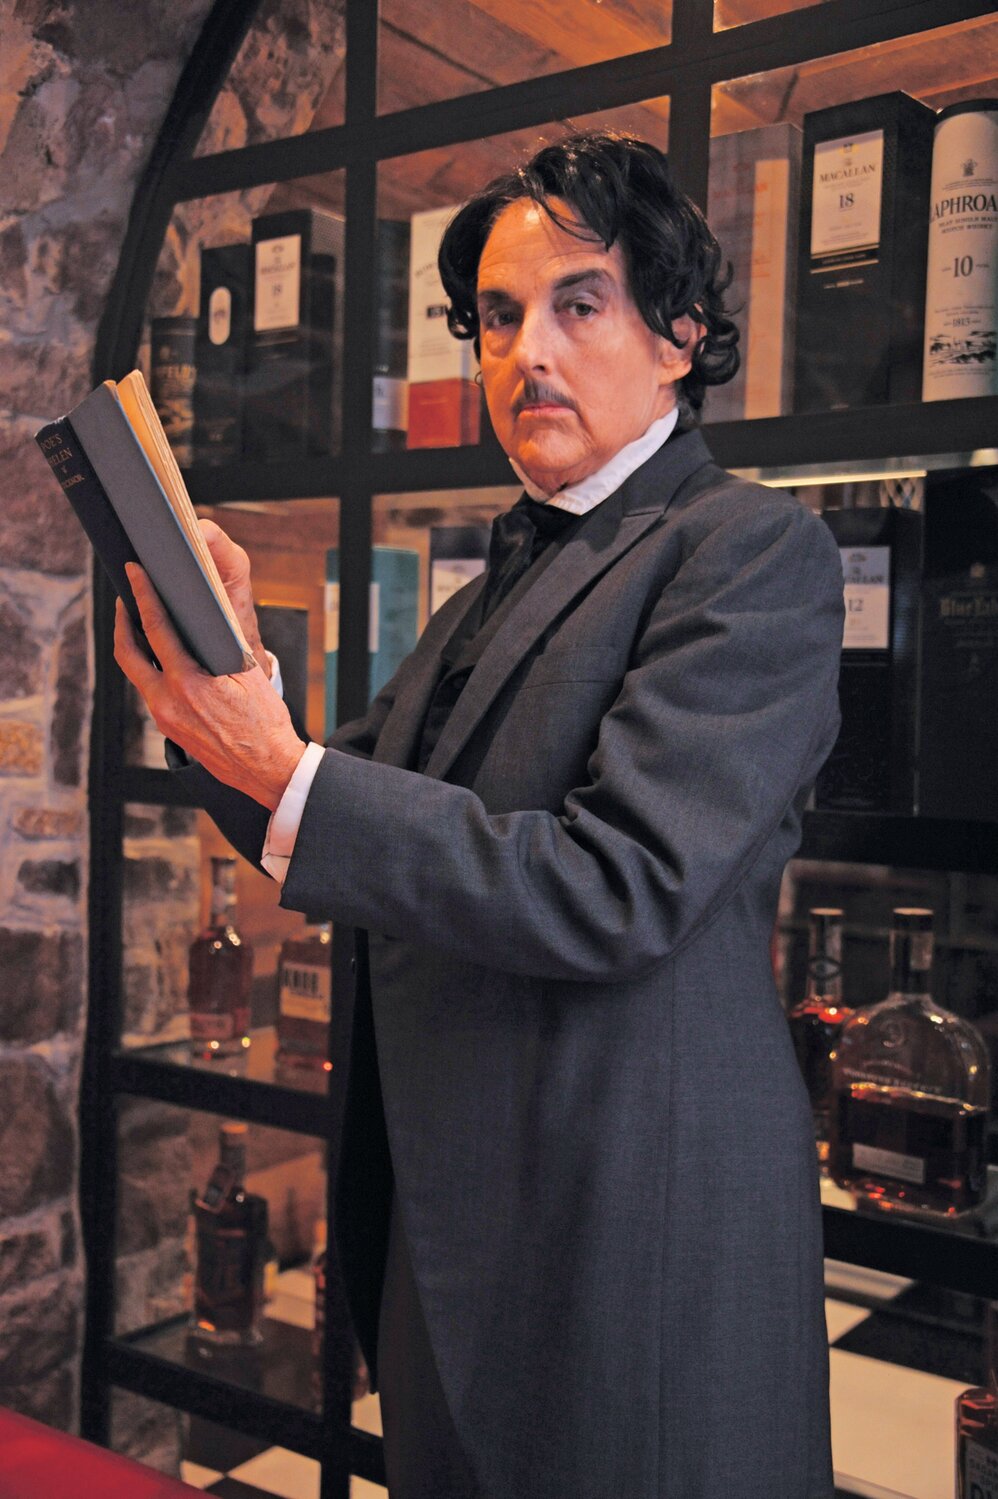 Edgar Allen Poe, portrayed by Helen McKenna.